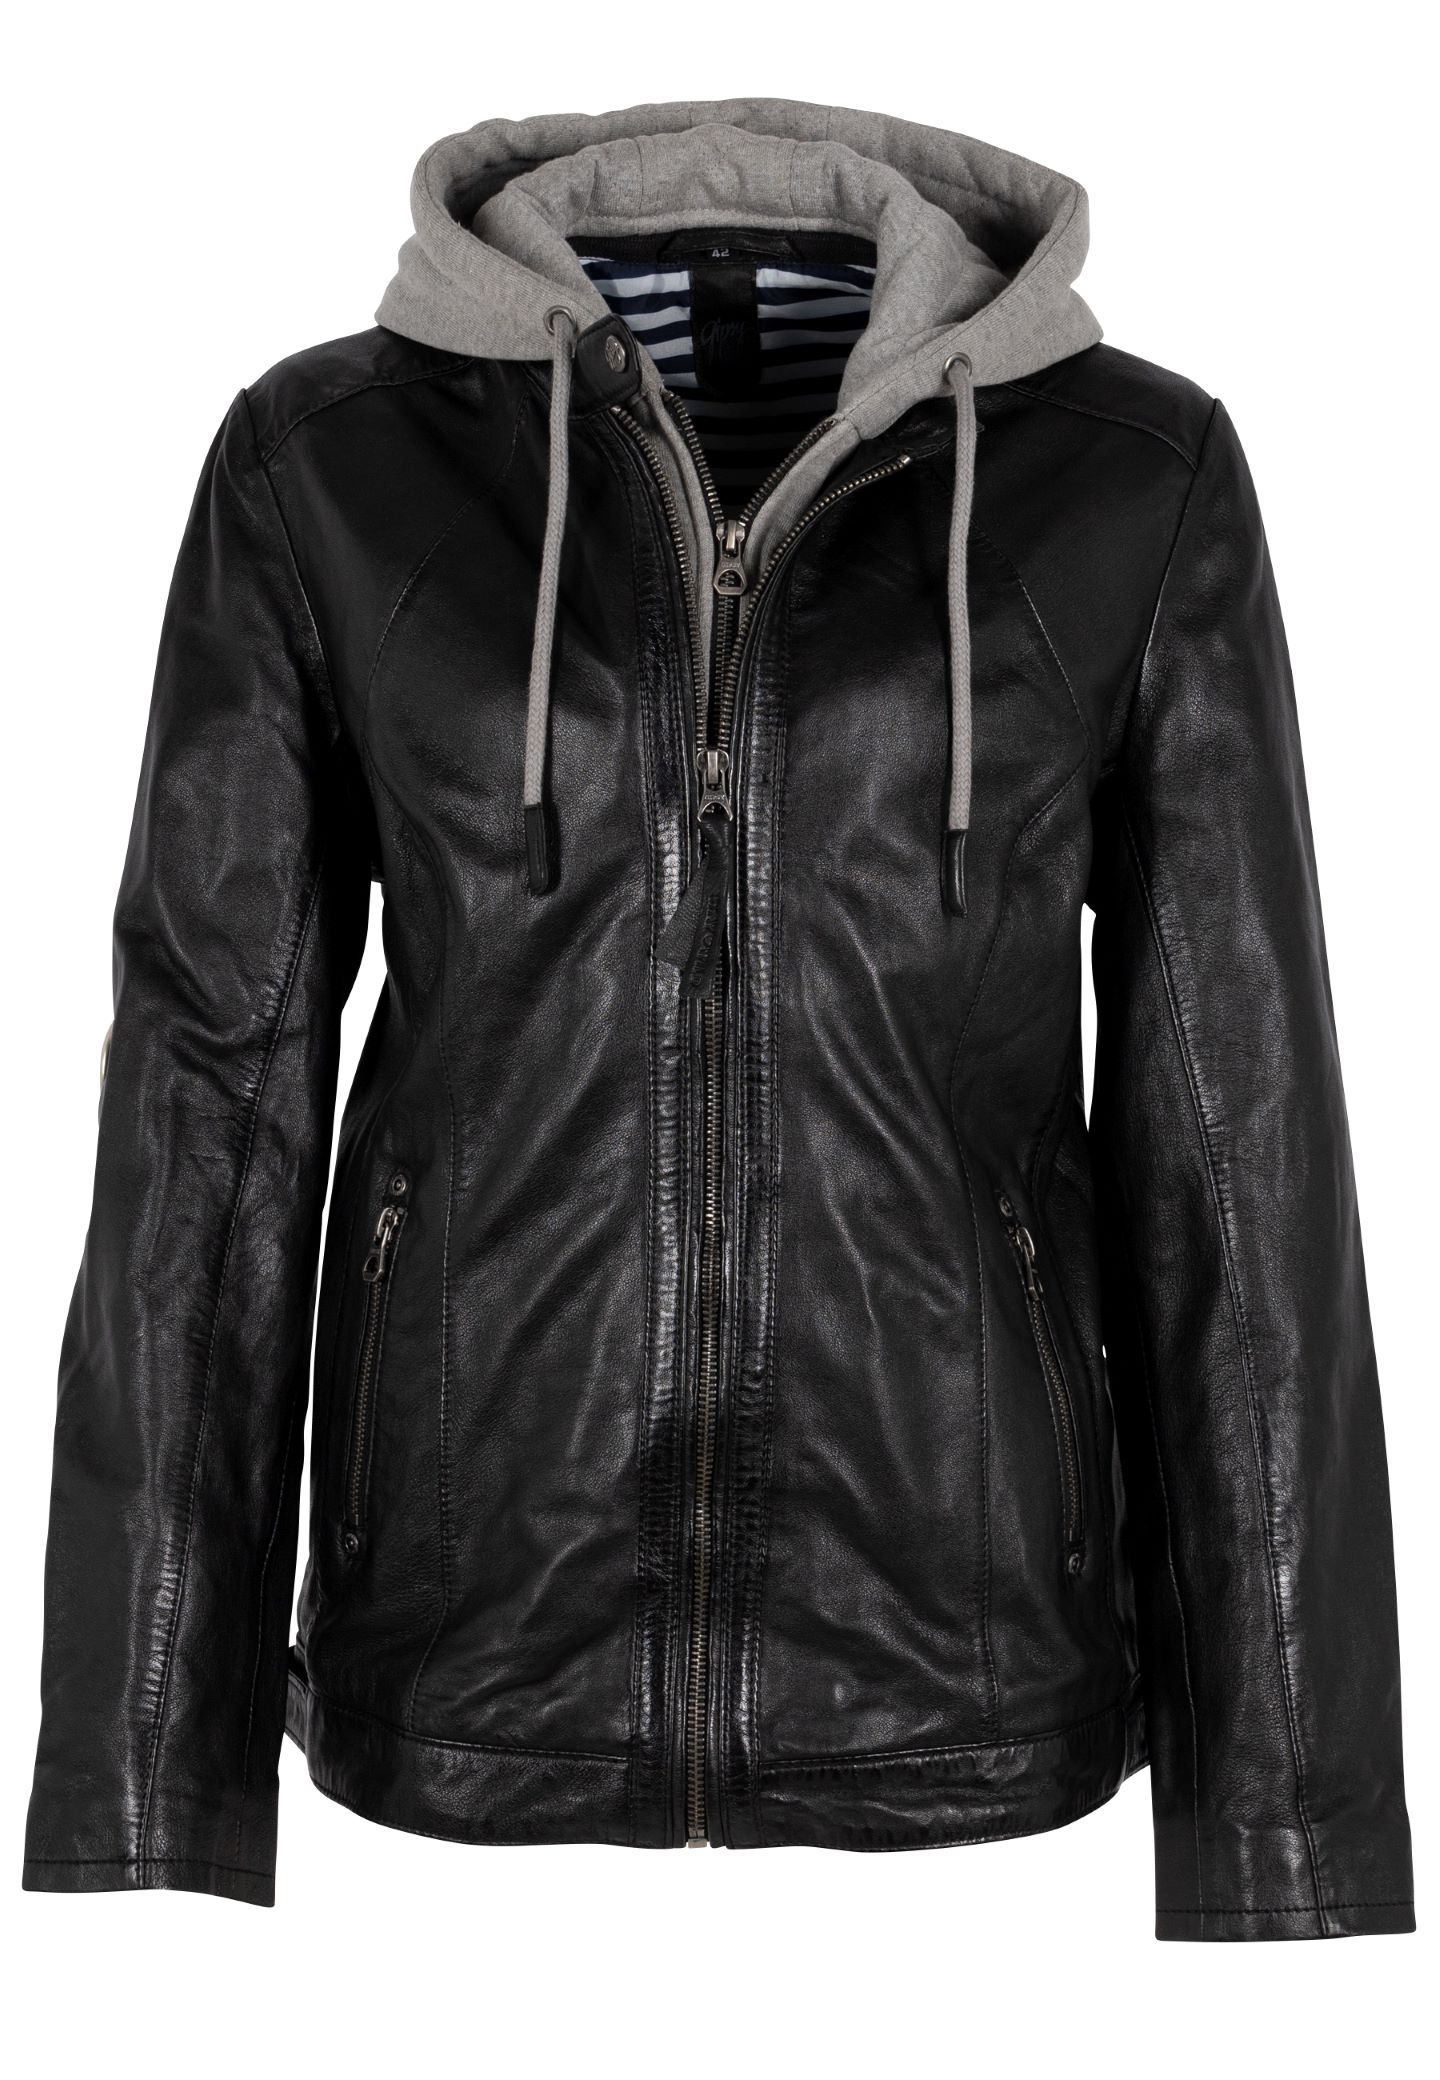 Černá kožená bunda s kapucí GWVaila, velké velikosti